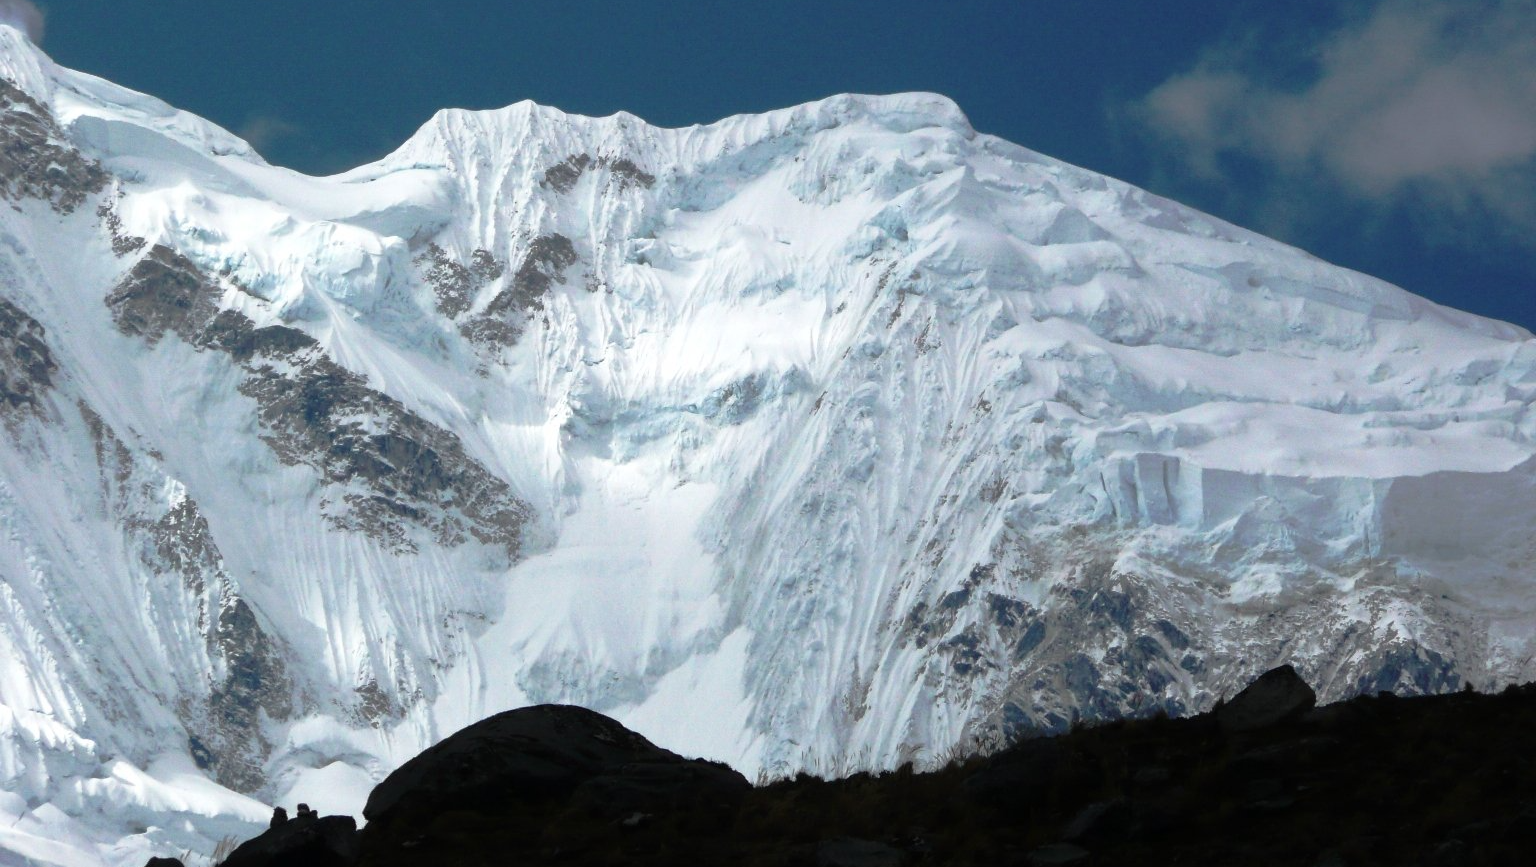 Salkantayt Peak